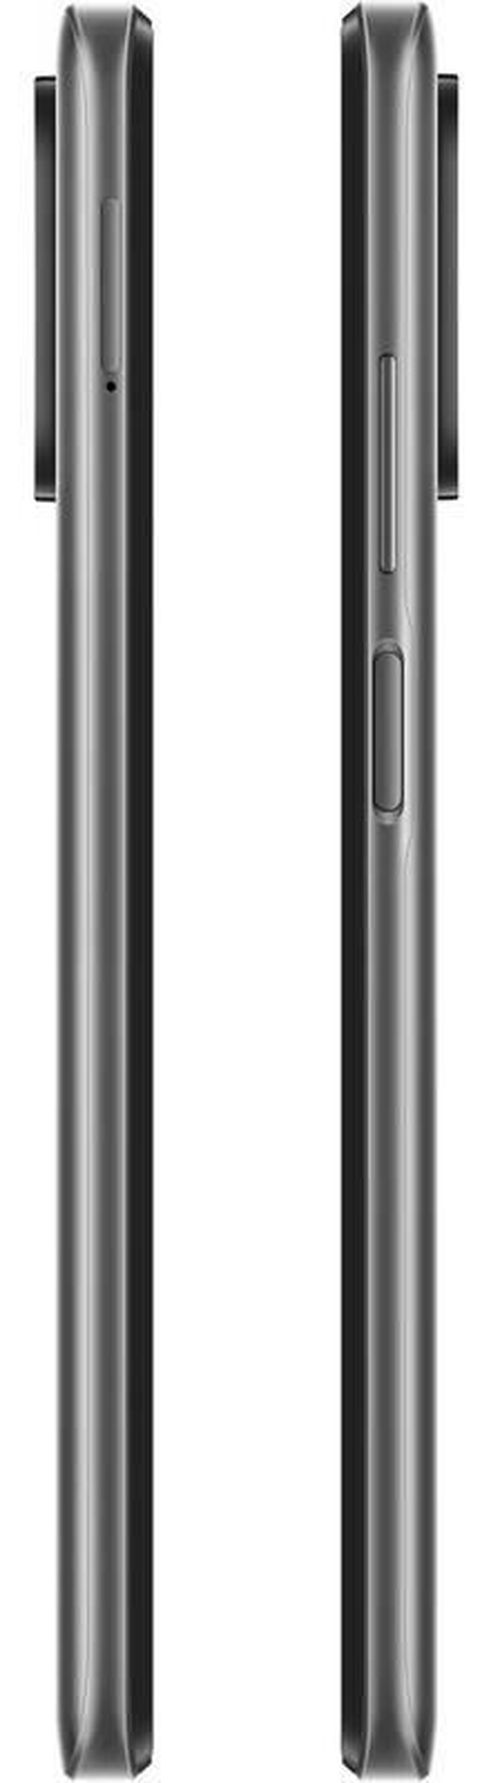 купить Смартфон Xiaomi Redmi 10 4/64GB Gray в Кишинёве 